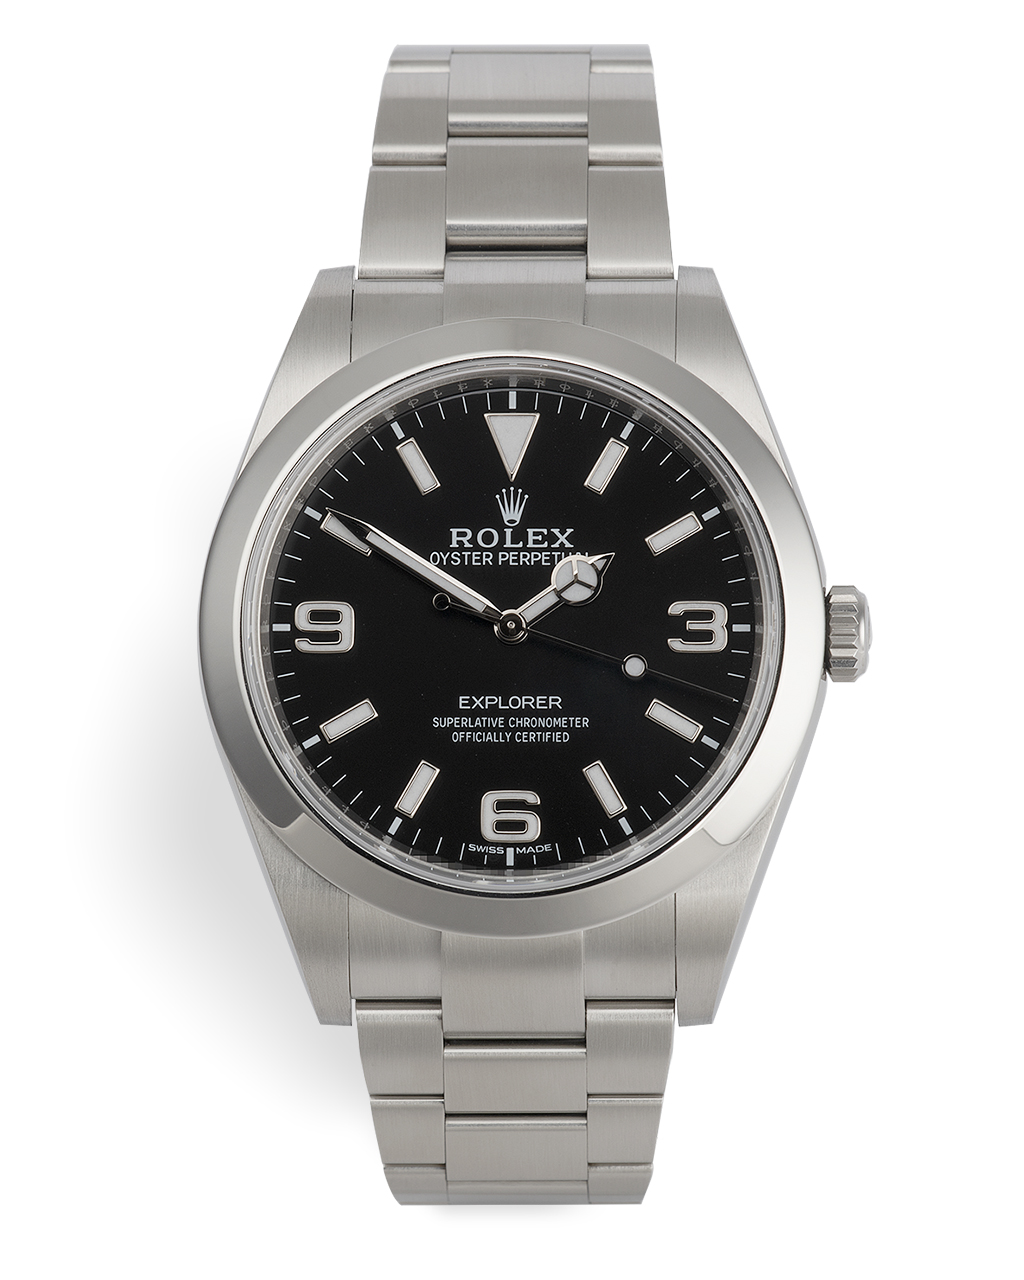 Rolex Explorer Watches | ref 214270 | Rolex Warranty to 2024 | The ...